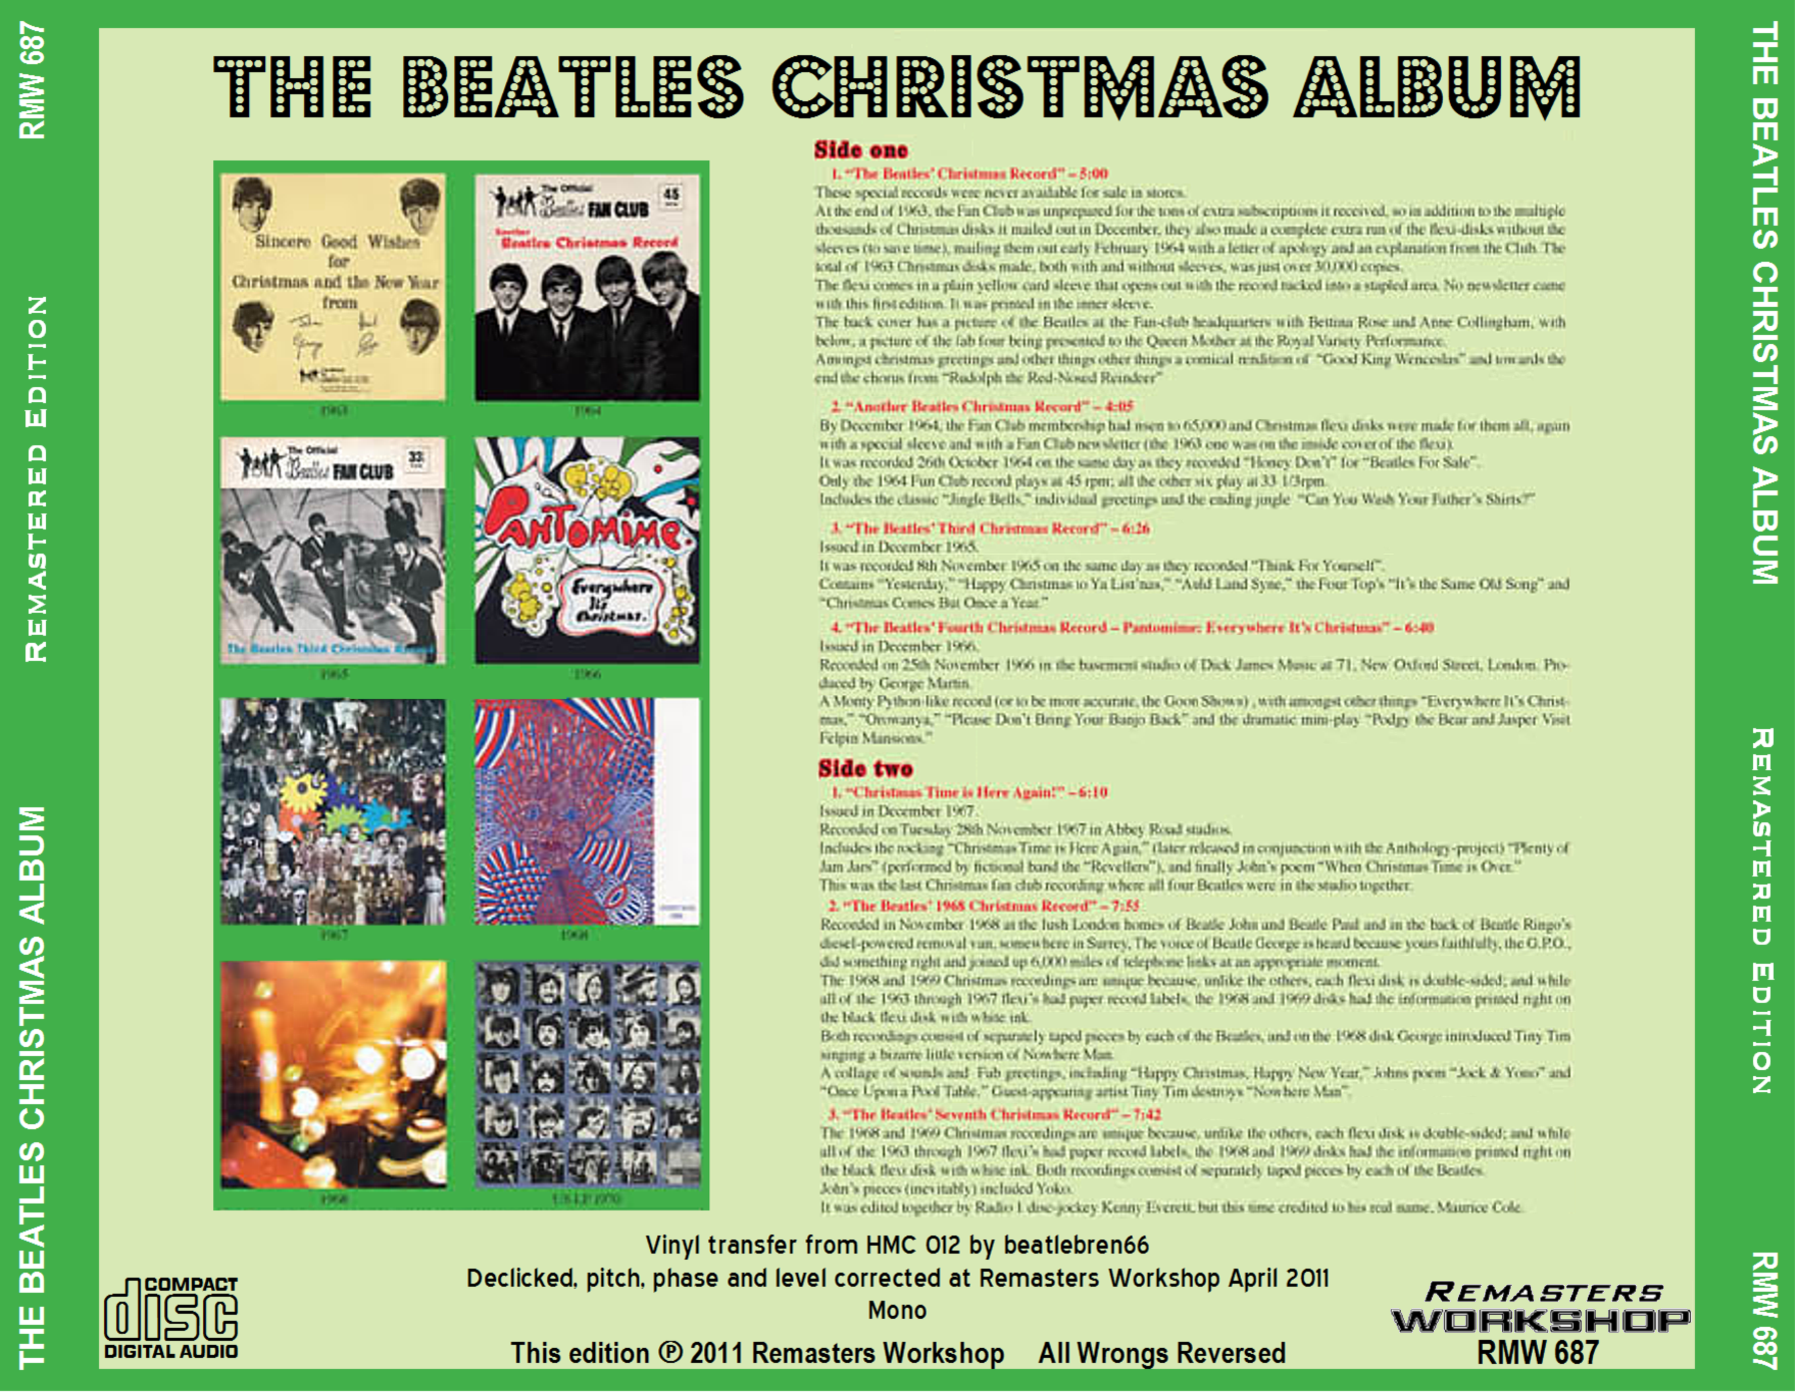 BeatlesChristmasAlbum (1).png